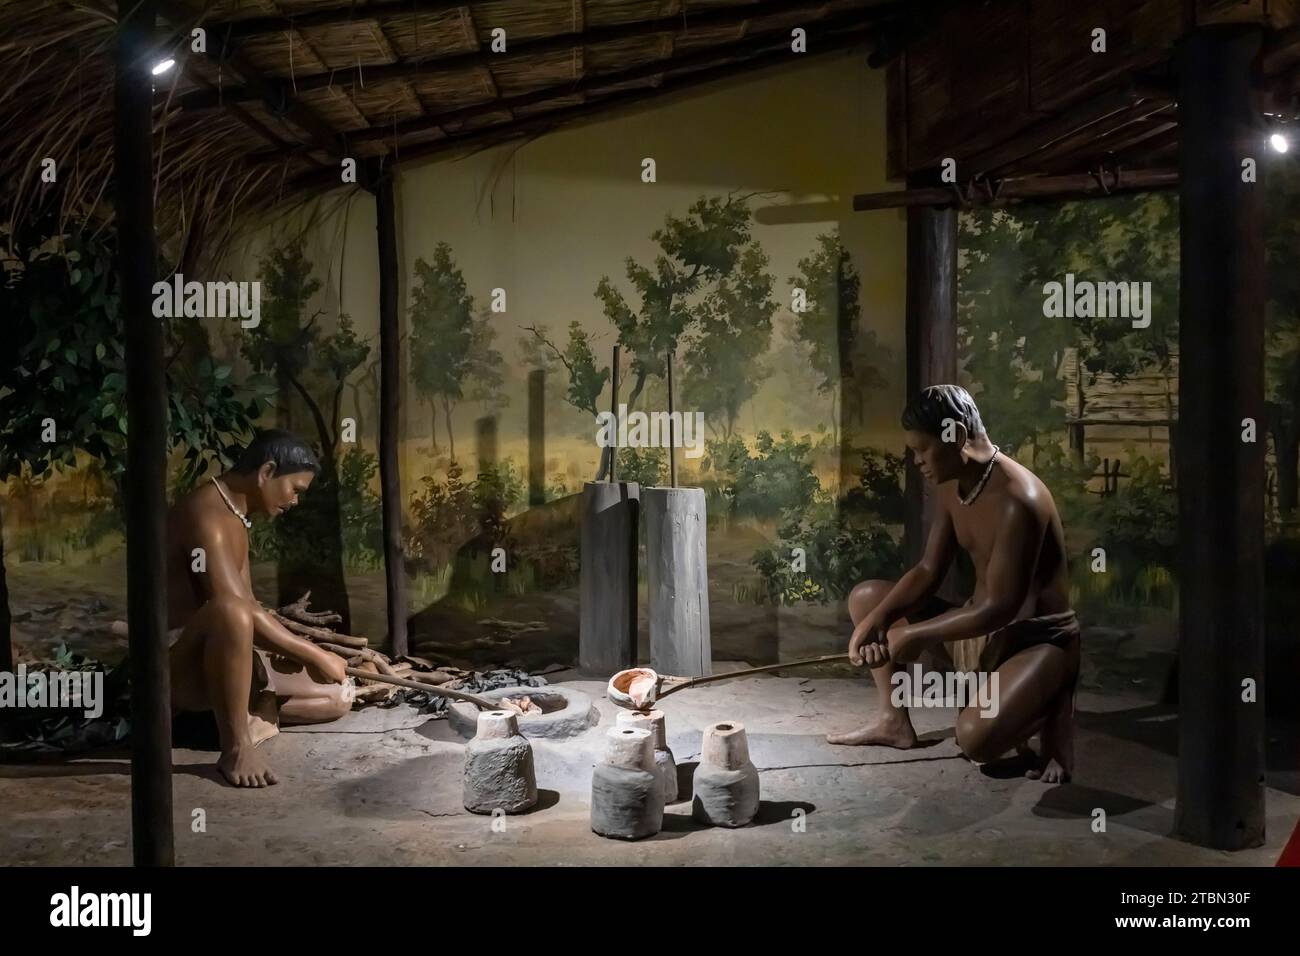 Ban Chiang Nationalmuseum, Diorama des antiken menschlichen Lebens, Metallurgie, Ban Chiang, Udon Thani, Thailand, Südostasien, Asien Stockfoto